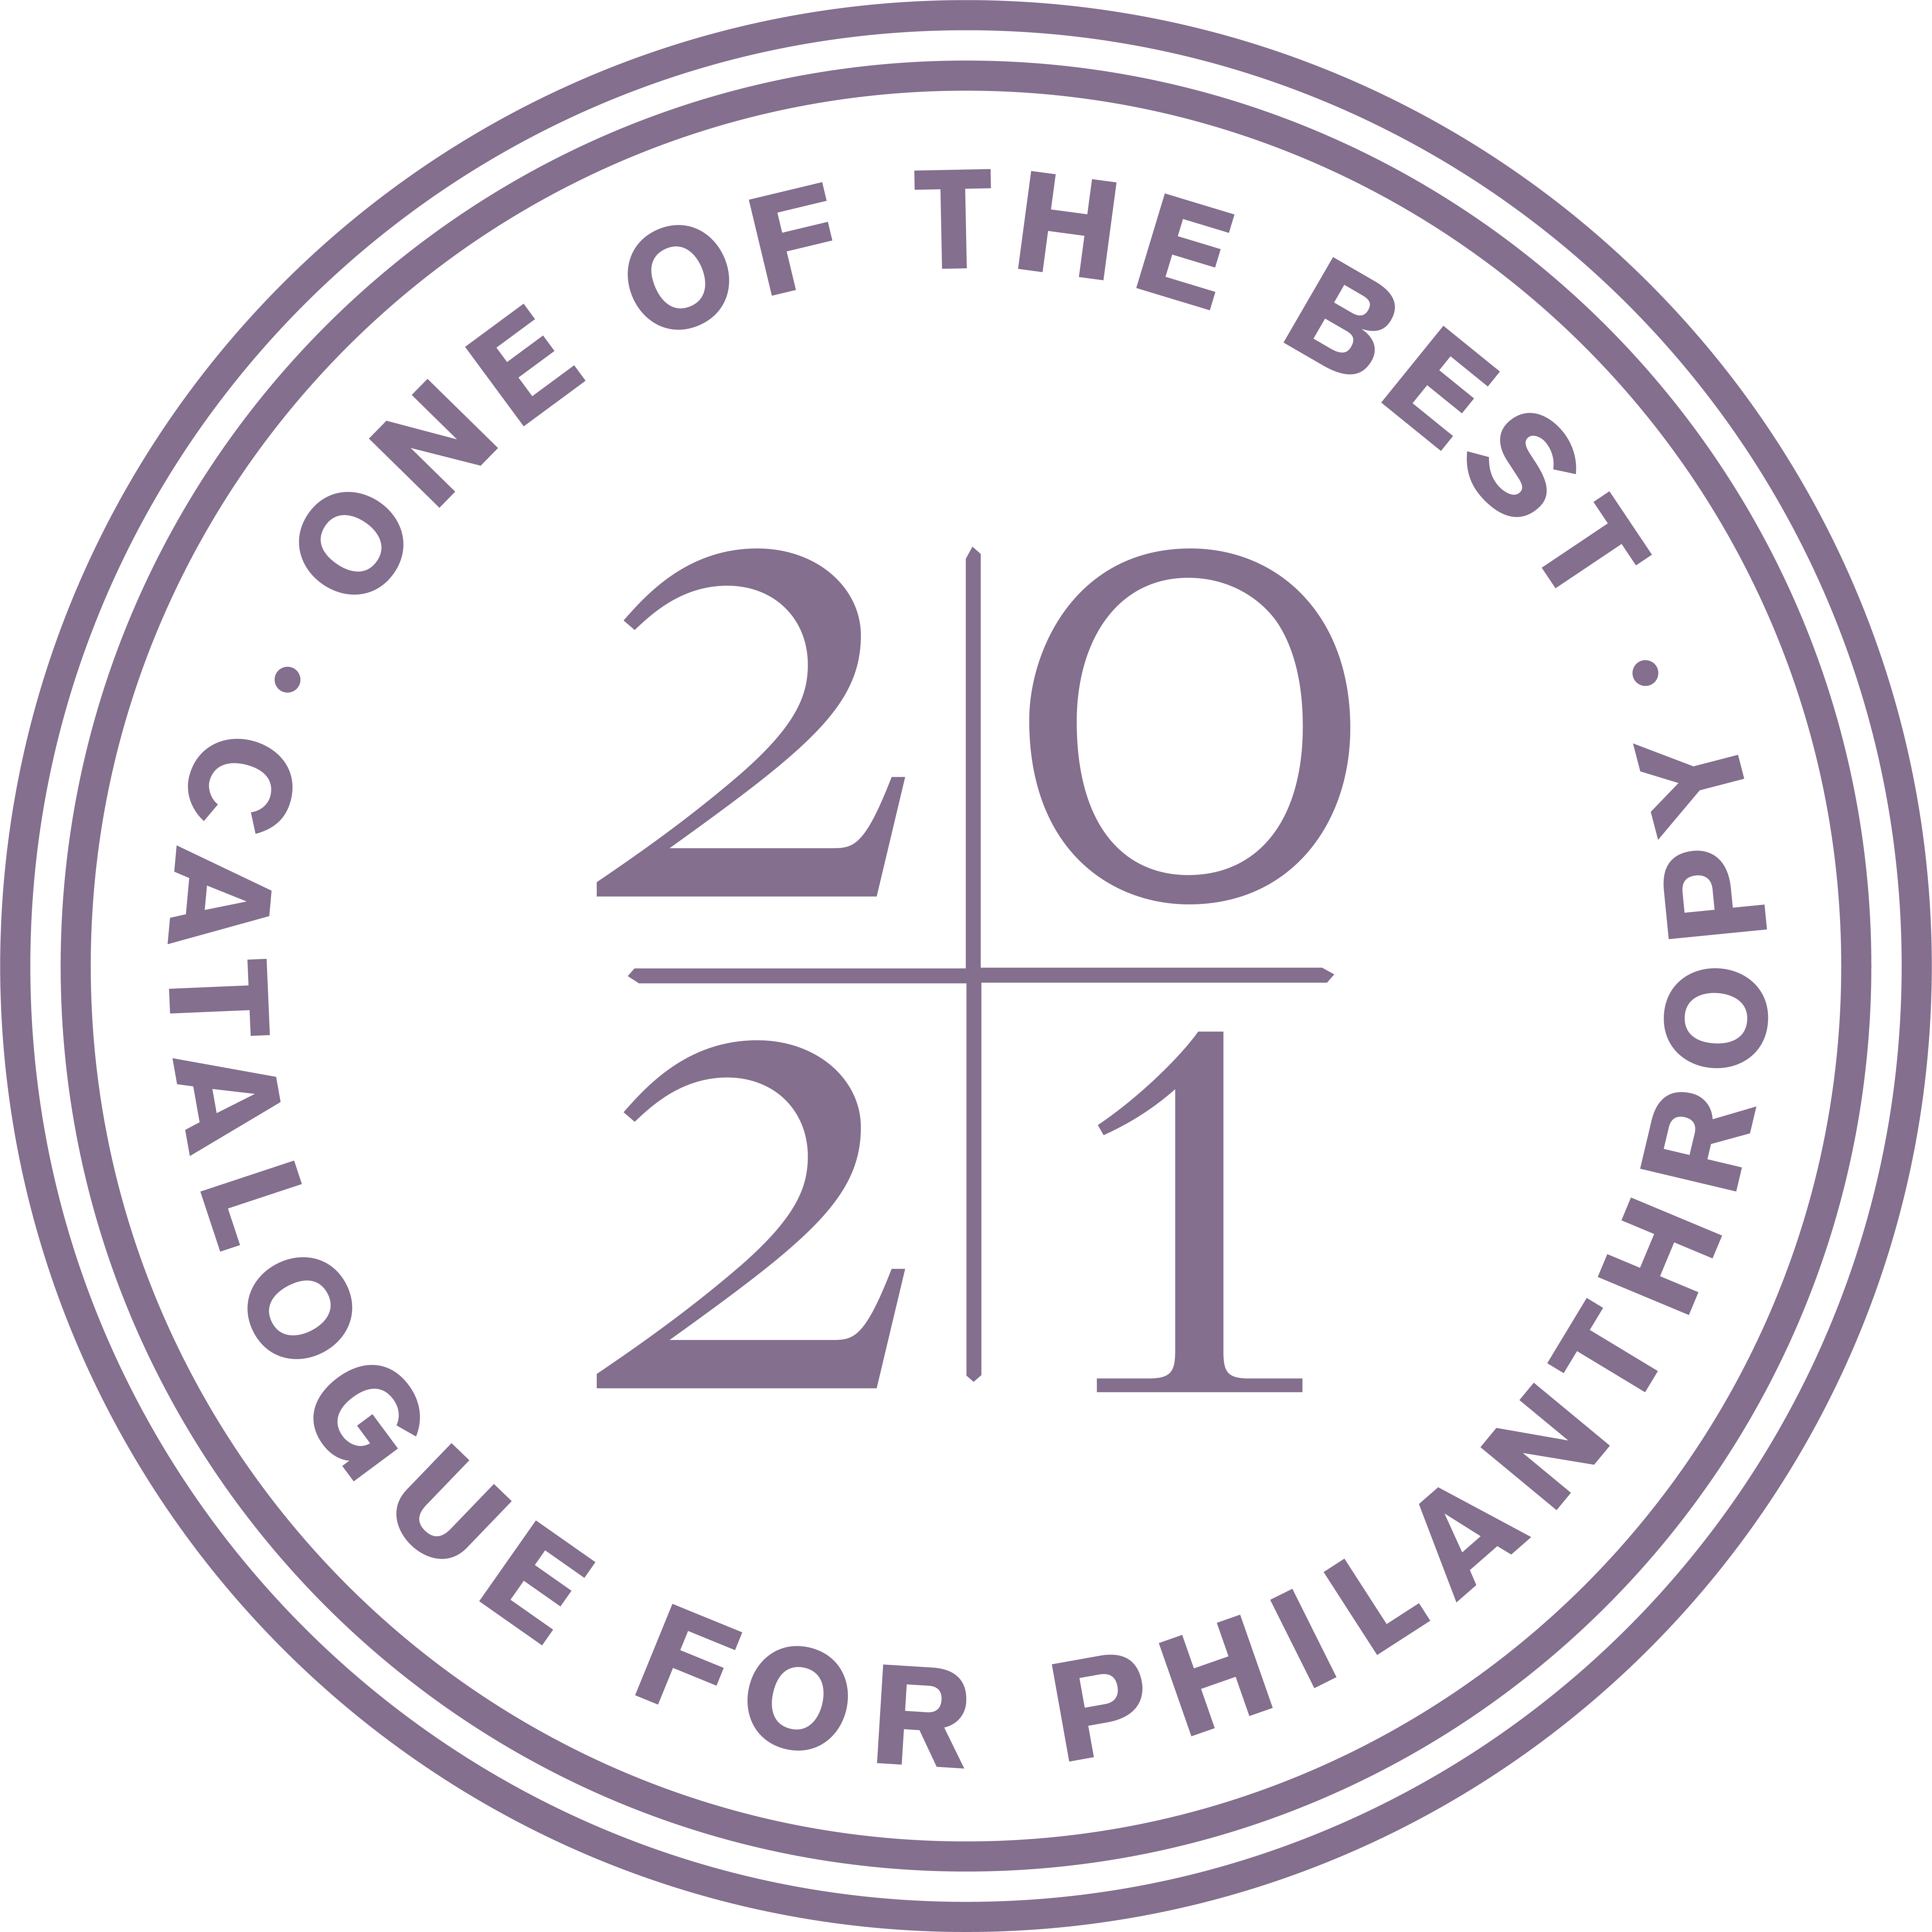 Catalogue for Philanthropy Logo